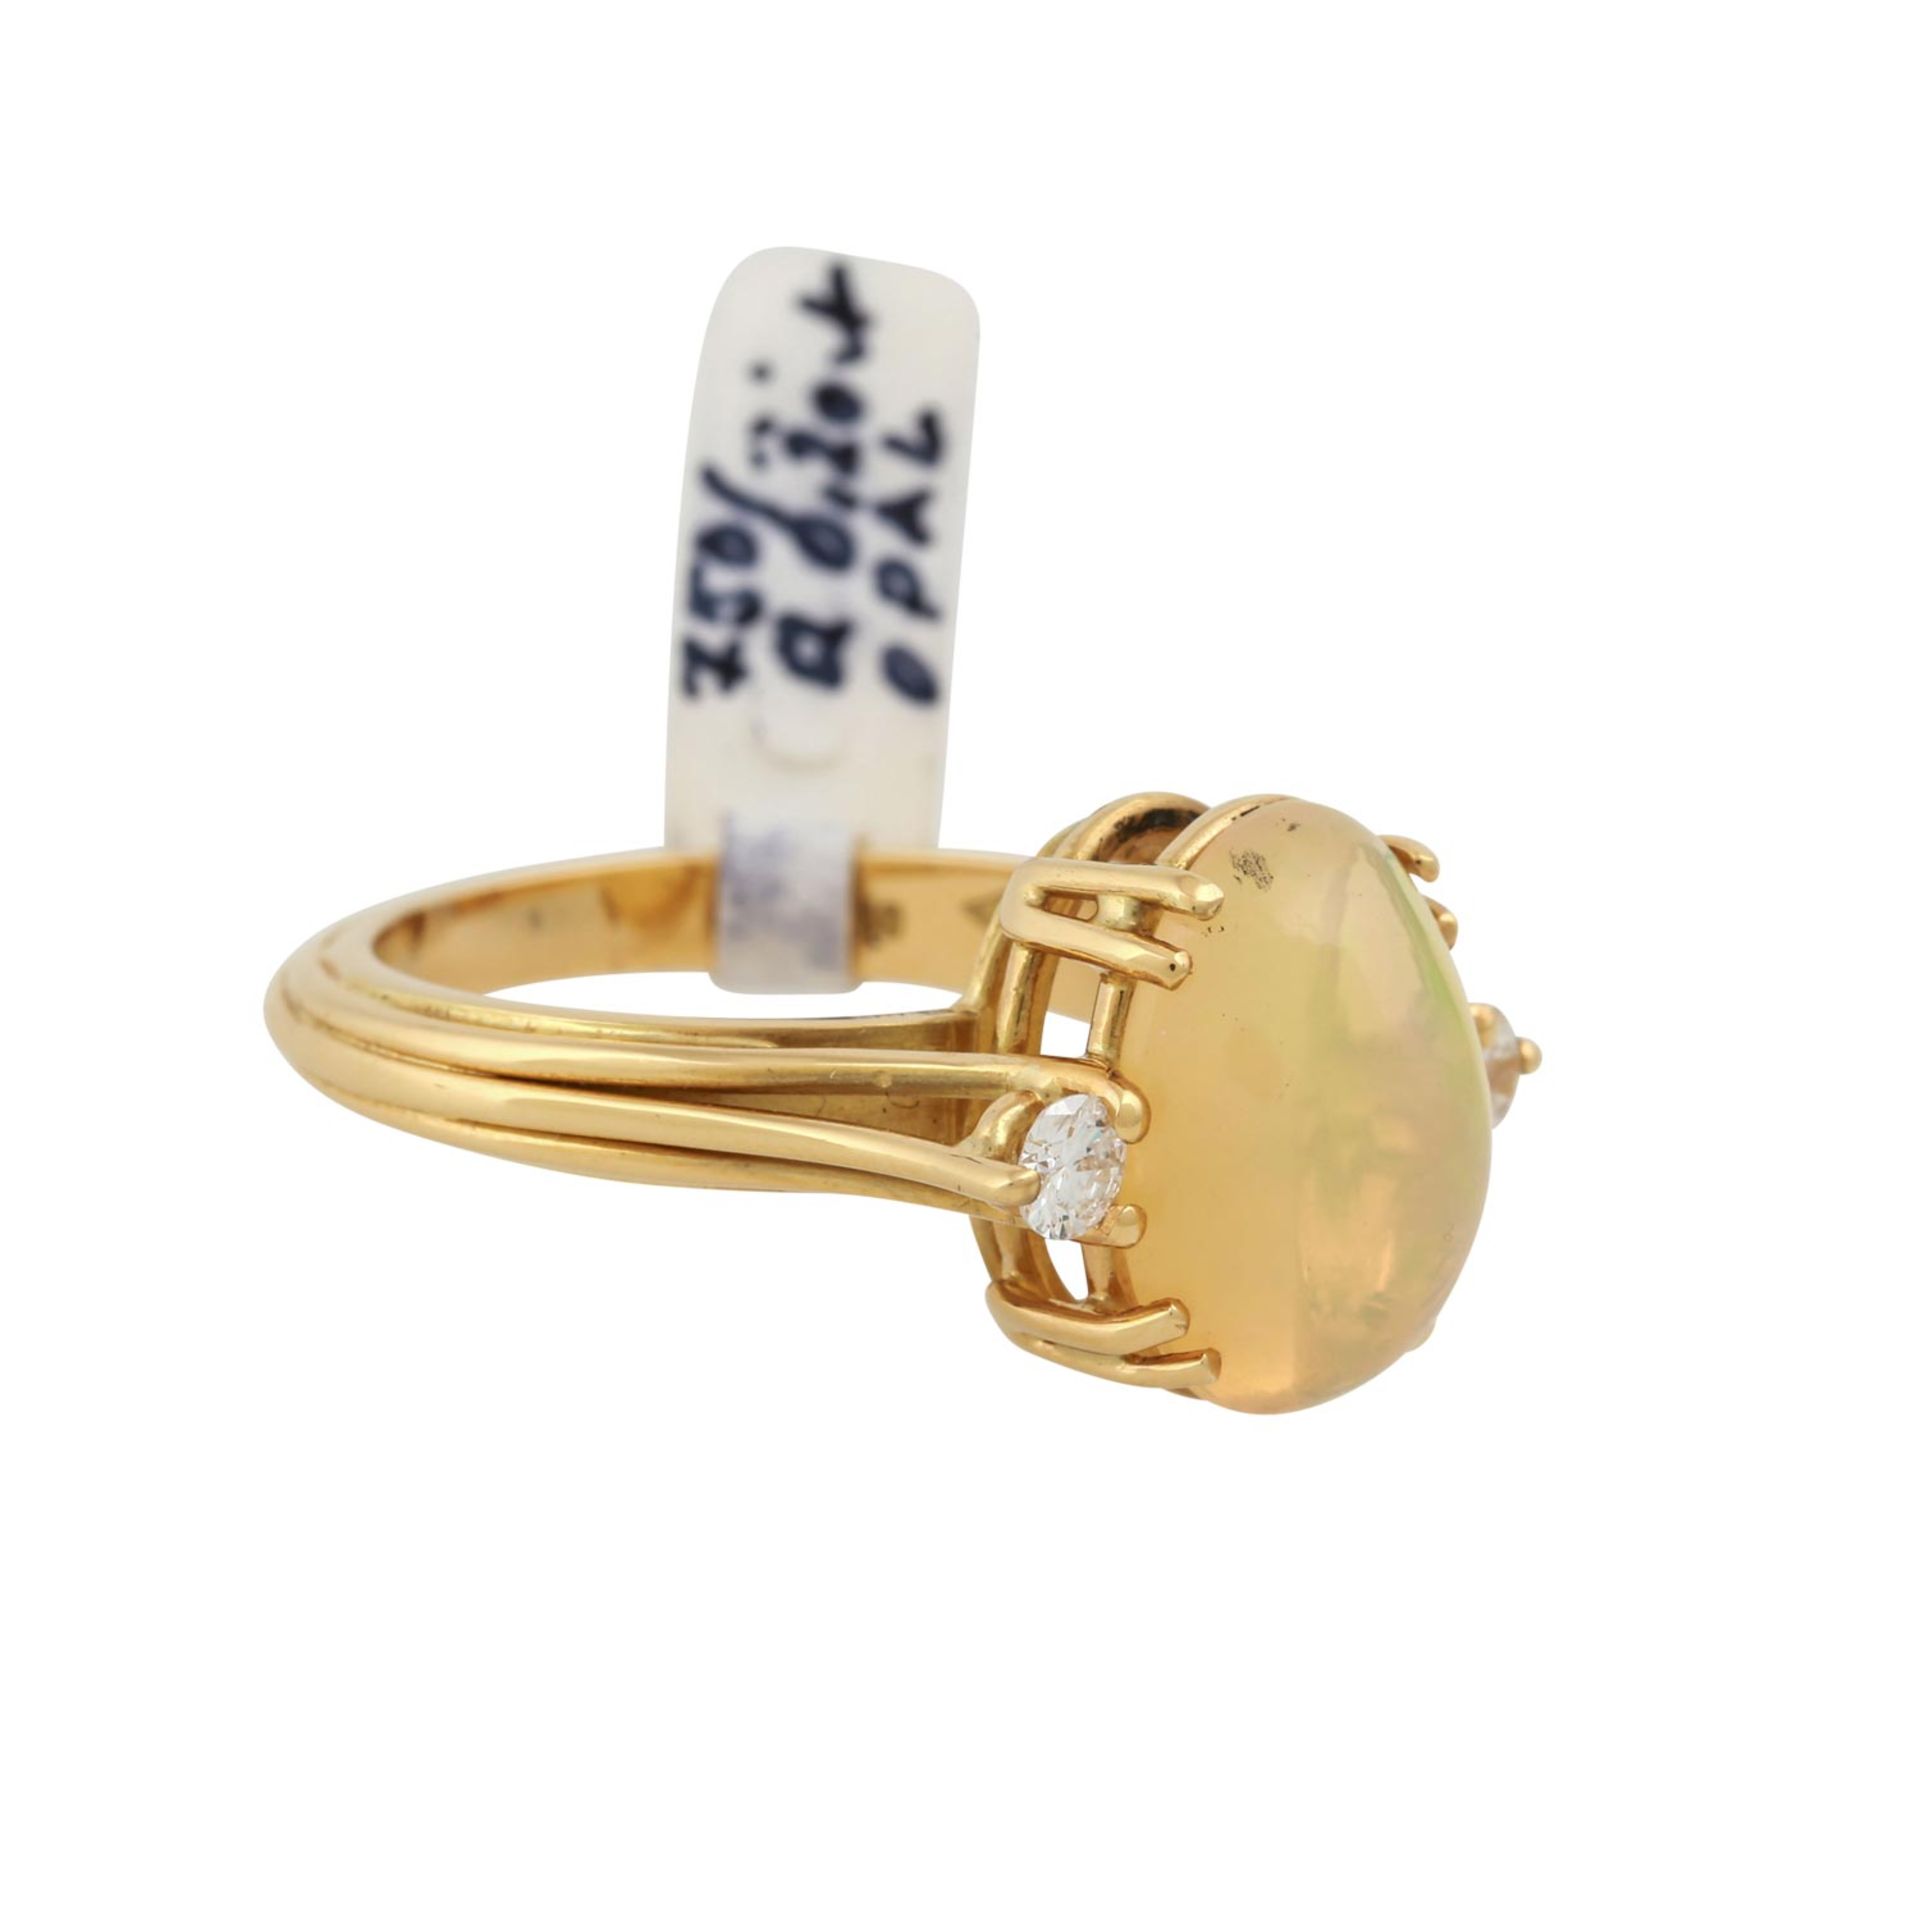 Ring mit ovalem Opal, flankiert von 2 Brillanten, zus. ca. 0,2 ct,NP: 1.420 €, GG 18K, 6,2 g, RW: